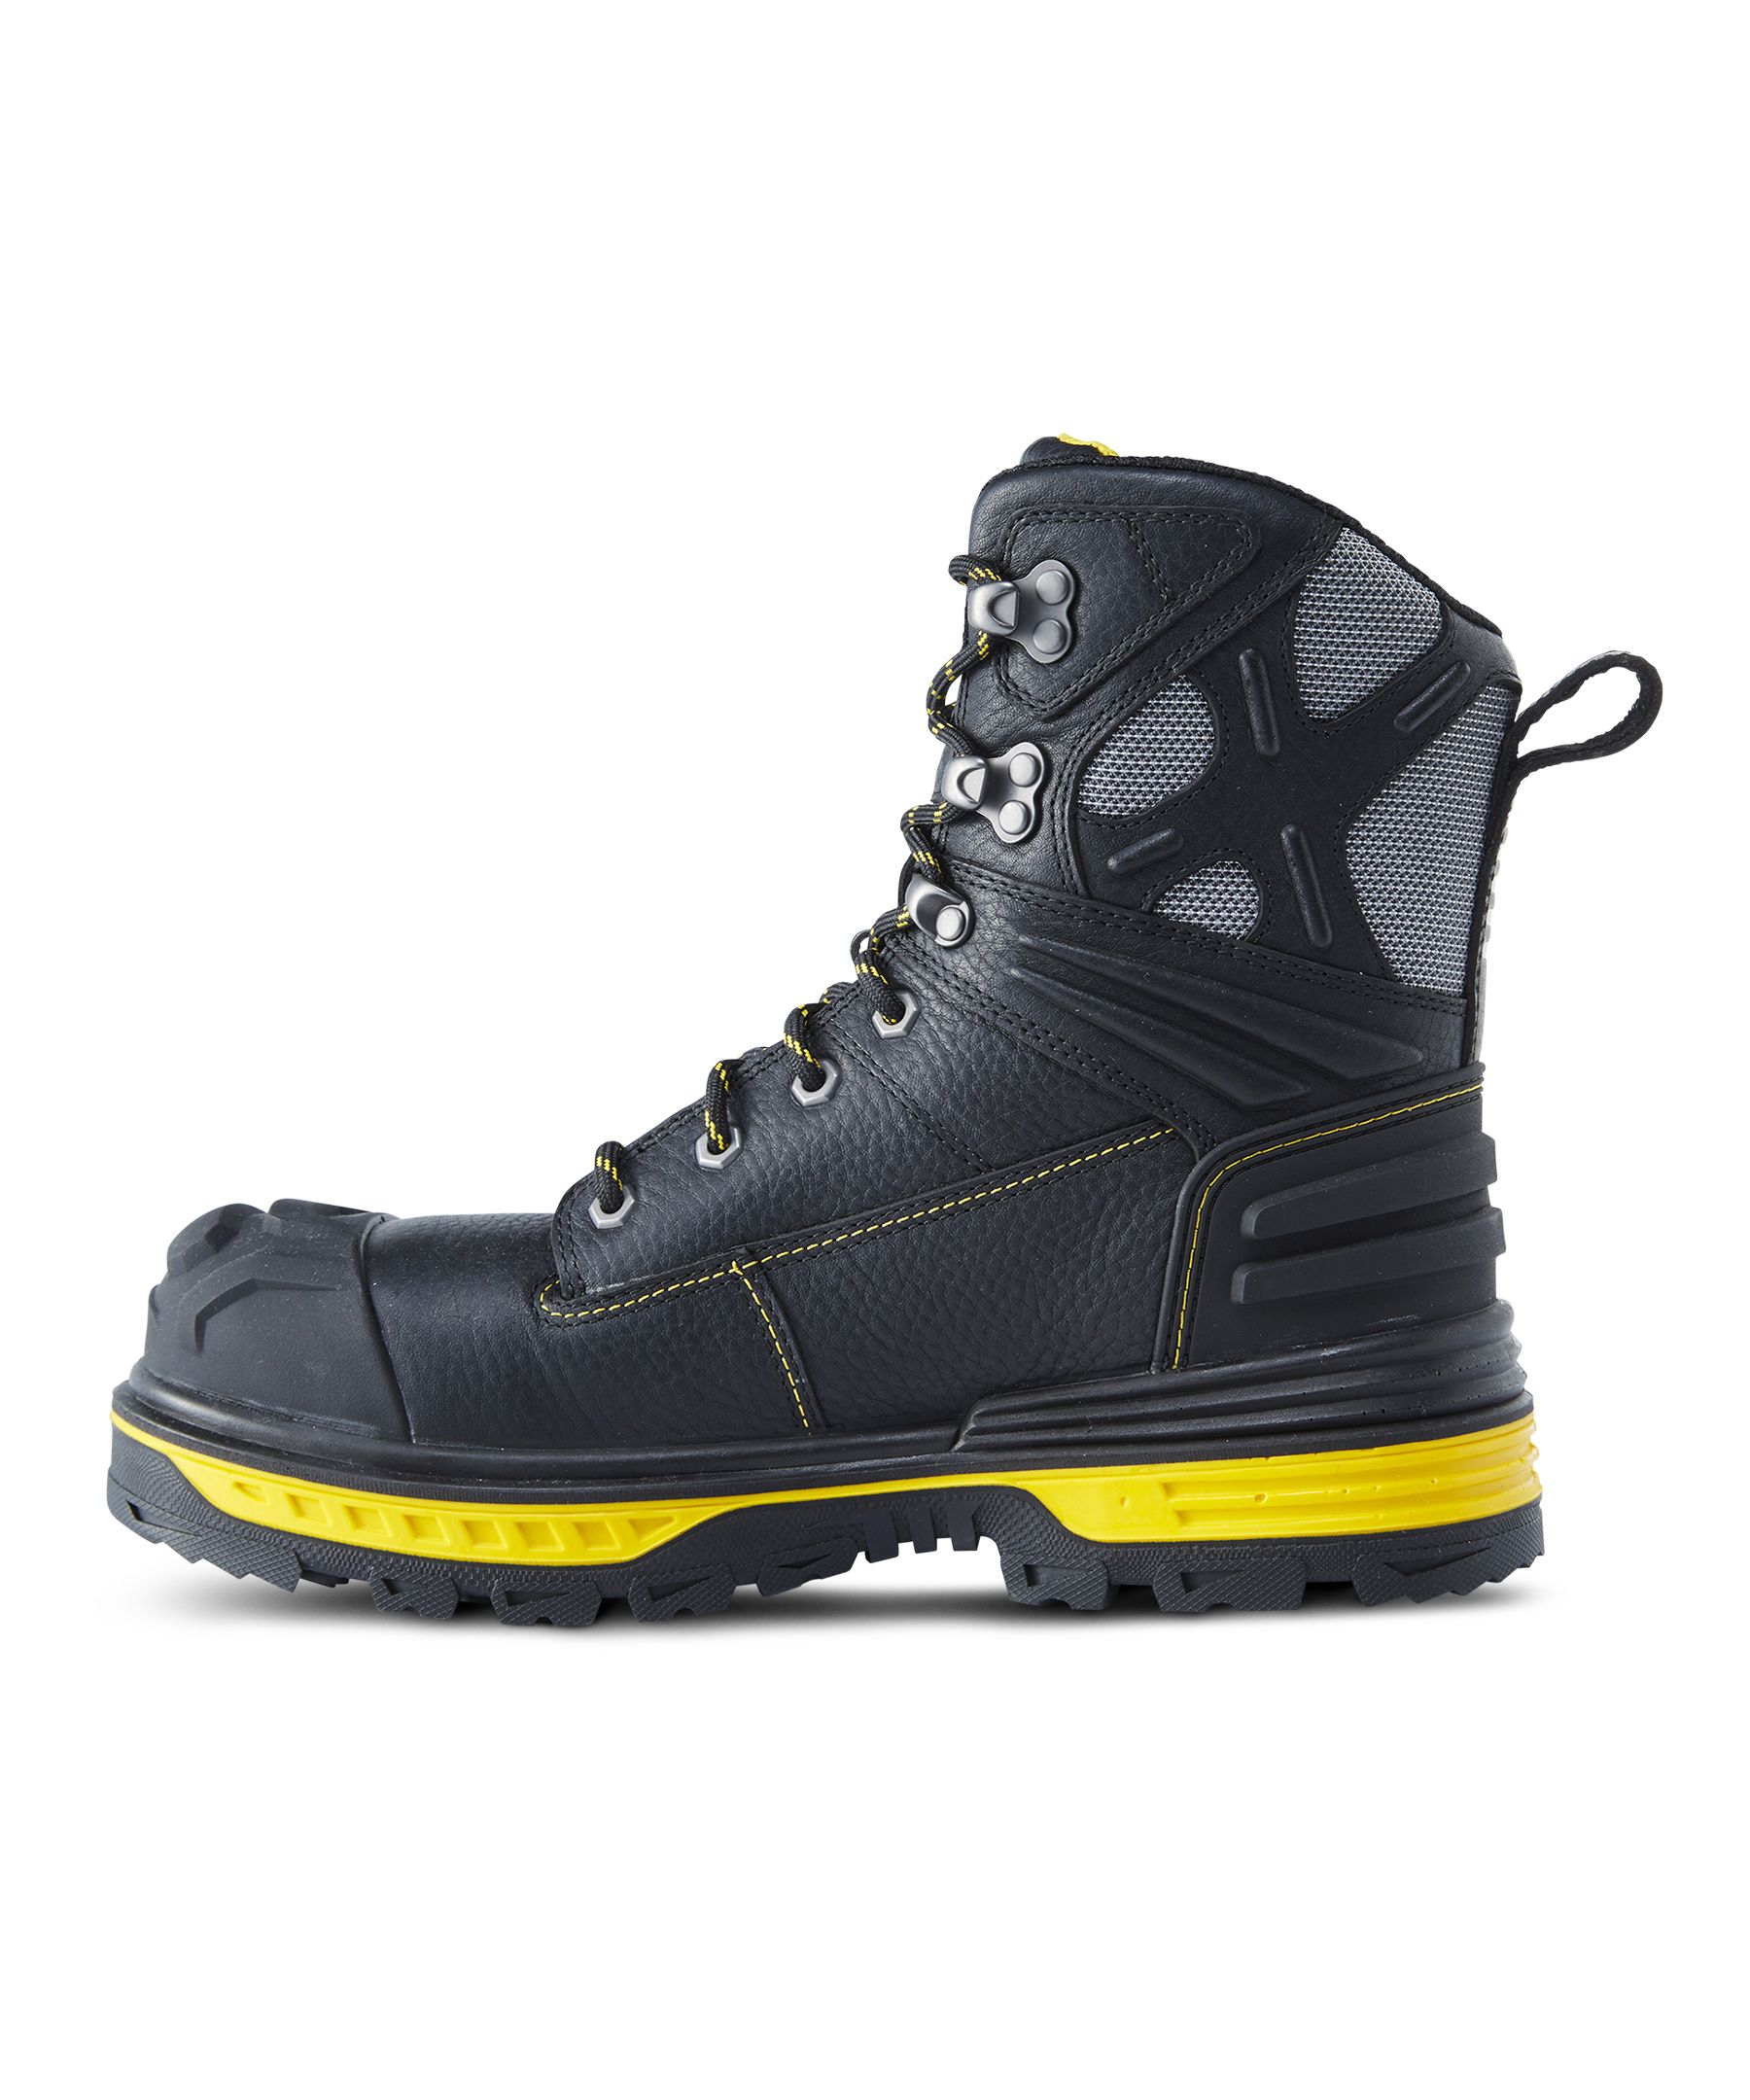 NORTIV 8 Homme Chaussure de Sécurité Bottes Chaussures de Travail Embout  Protection Acier Semelle Protection Antidérapante Boots Chantiers et